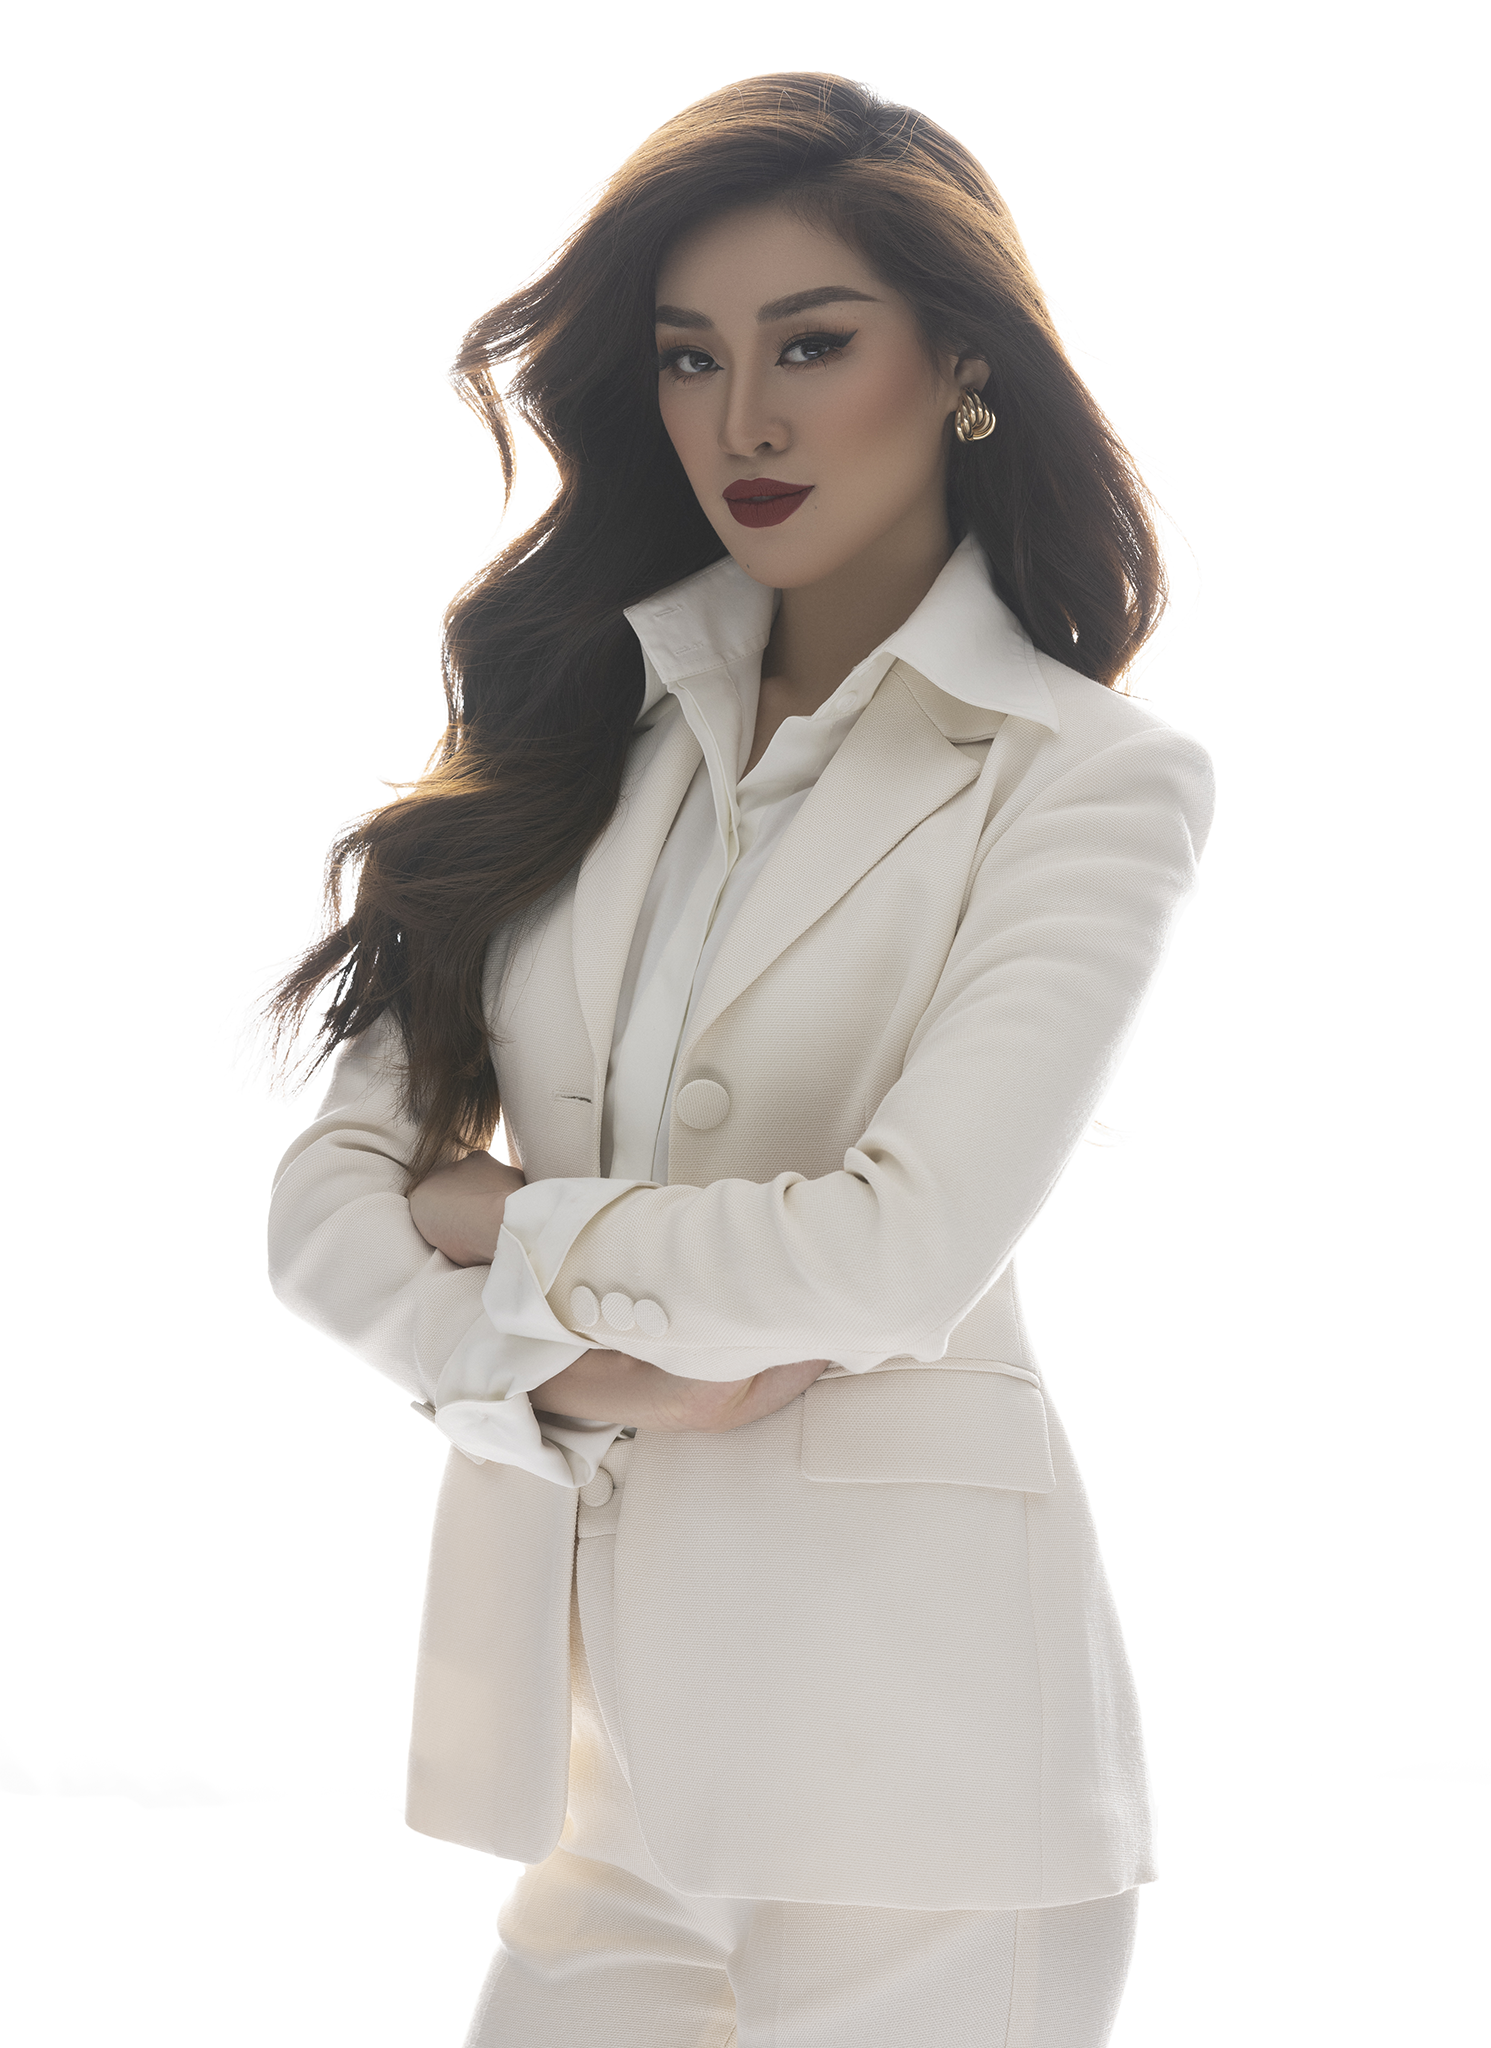 Với tone trang phục vest trắng, Khánh Vân chọn son môi đỏ đậm và tóc xoăn, gợi đến hình ảnh người phụ nữ hiện đại, tự tin,